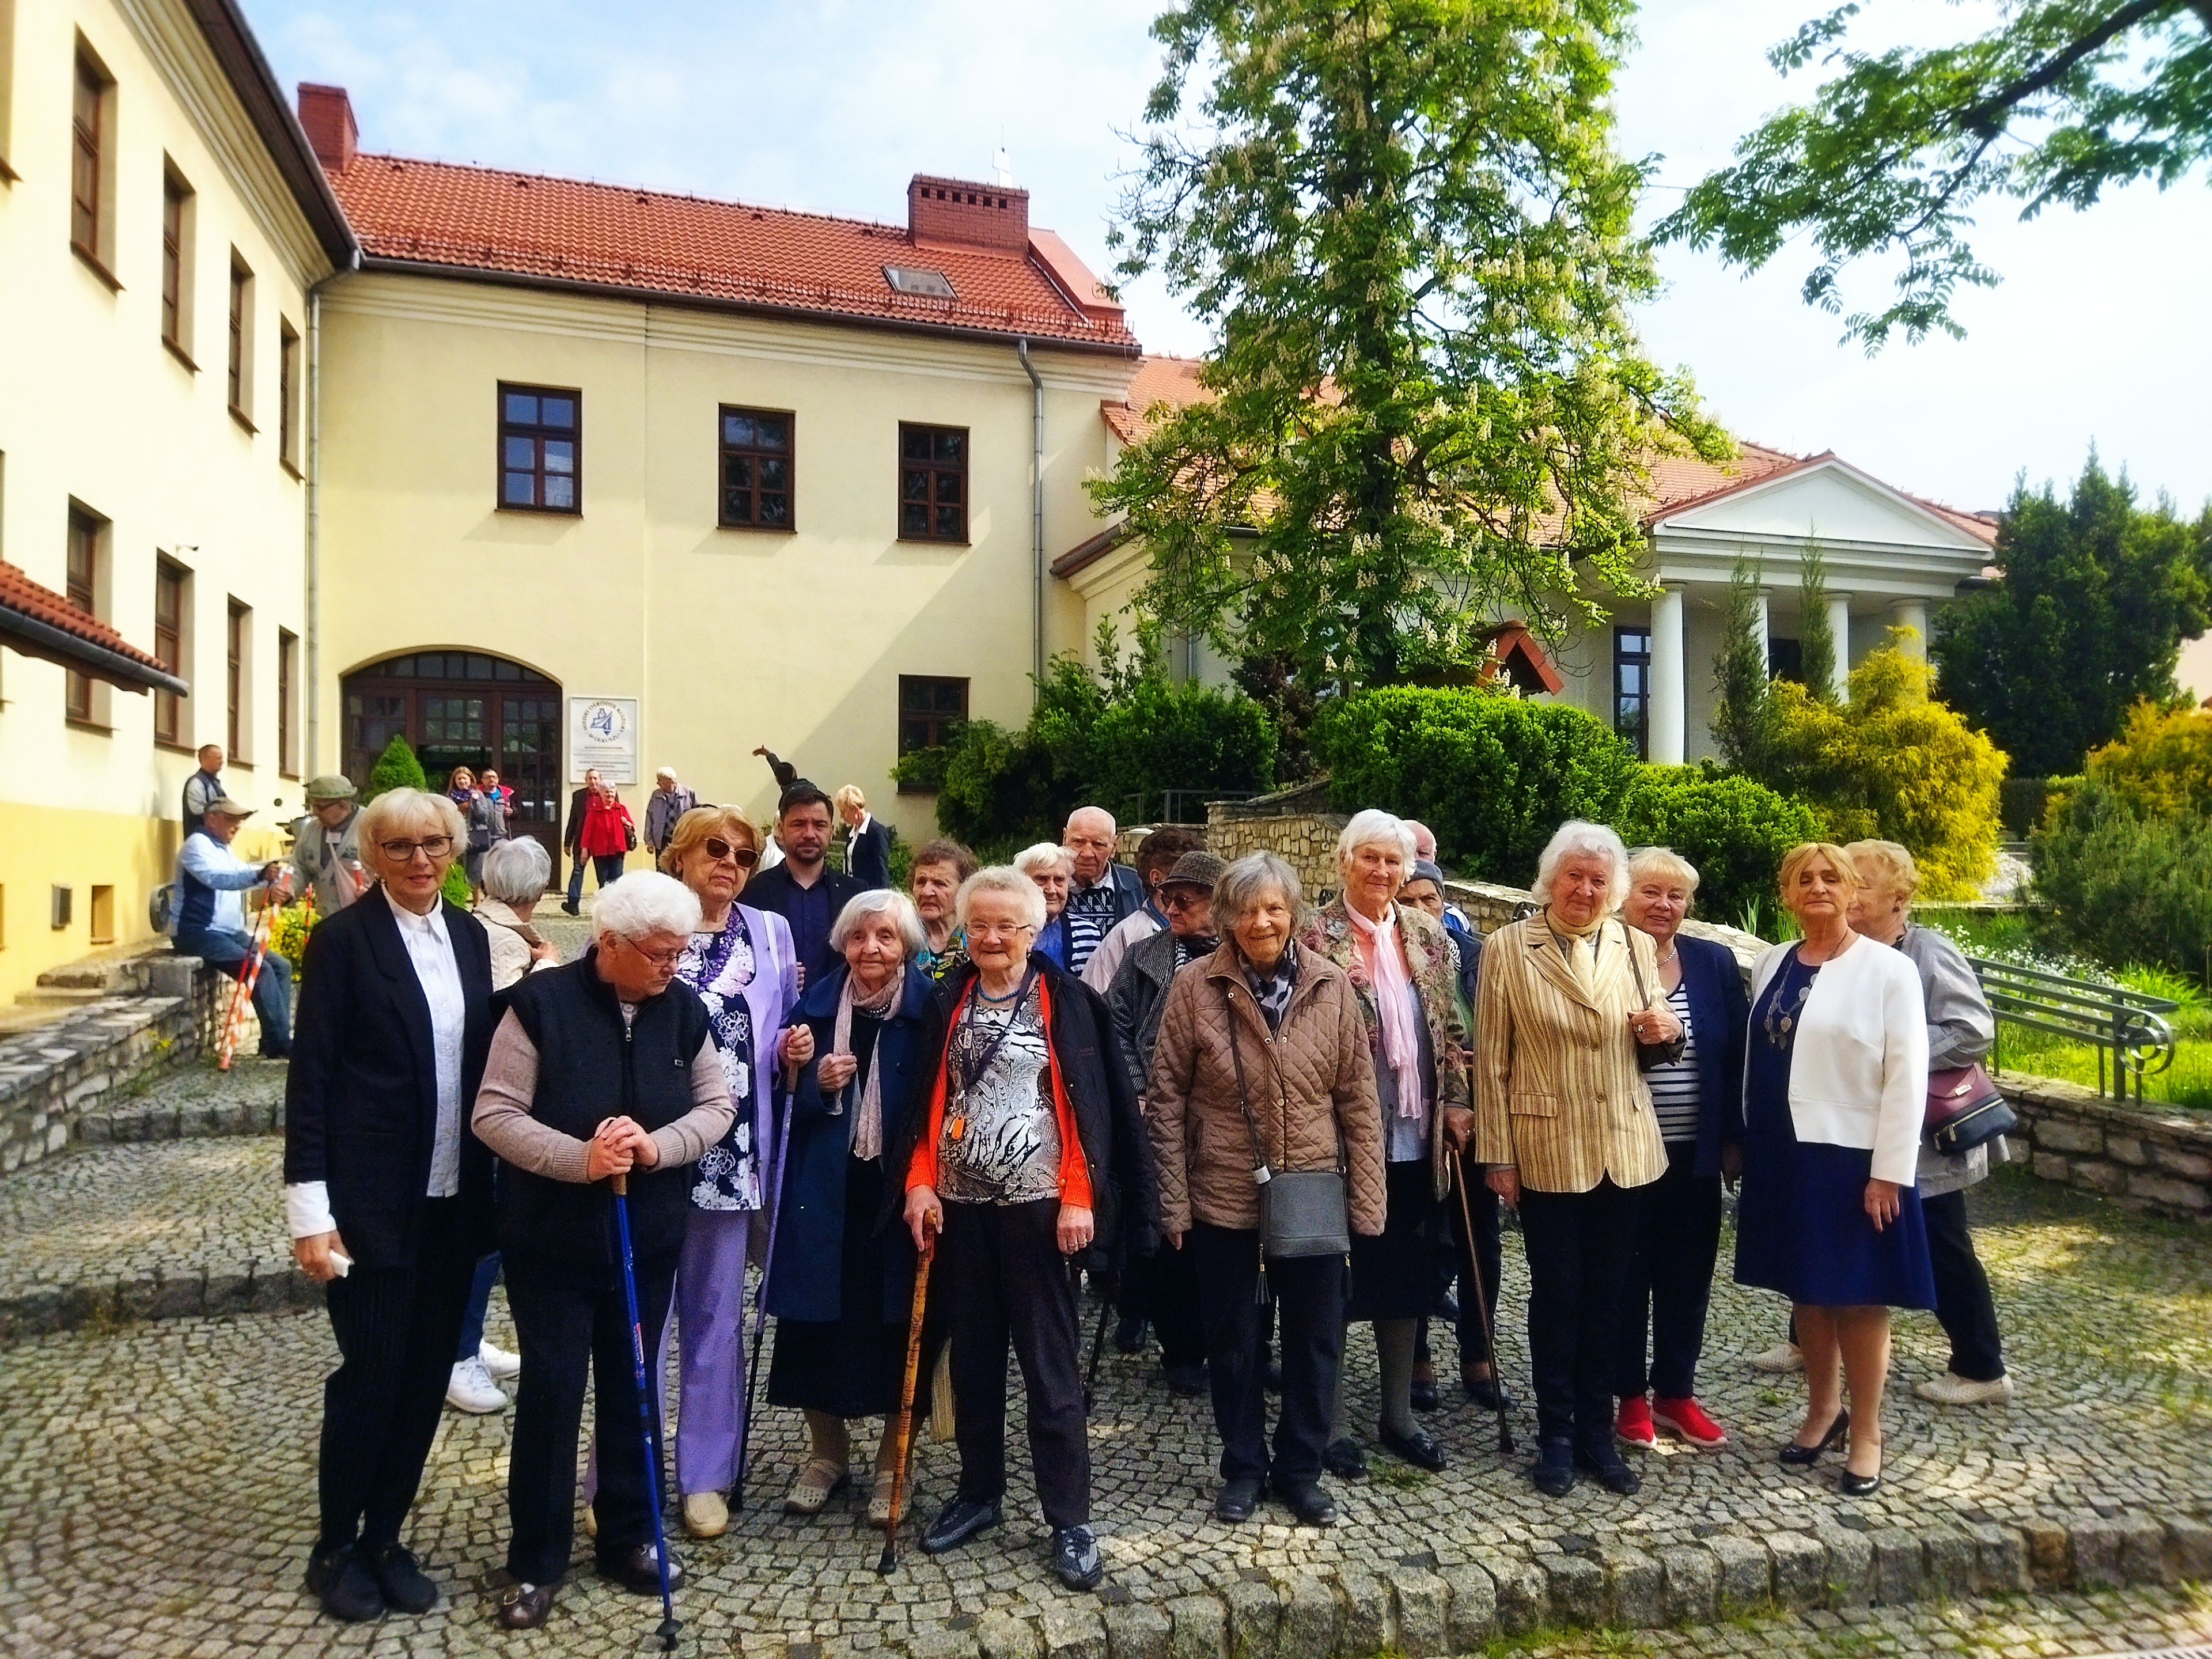 Kilkanaście starszych osób stoi przed zabytkowym budynkiem